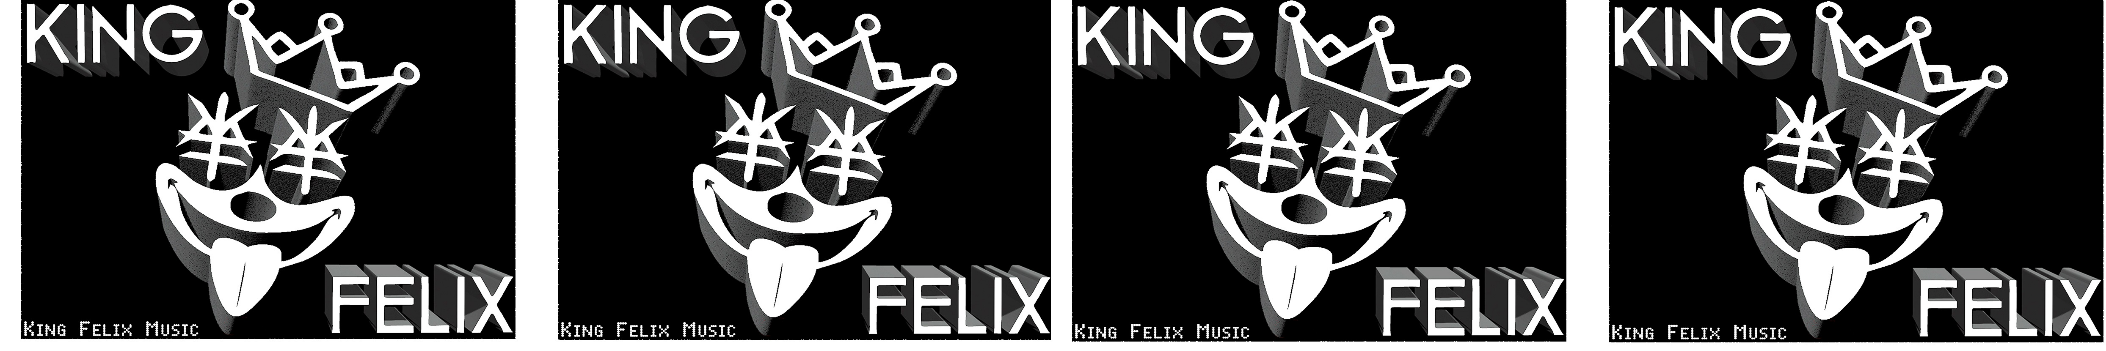 KingFelix